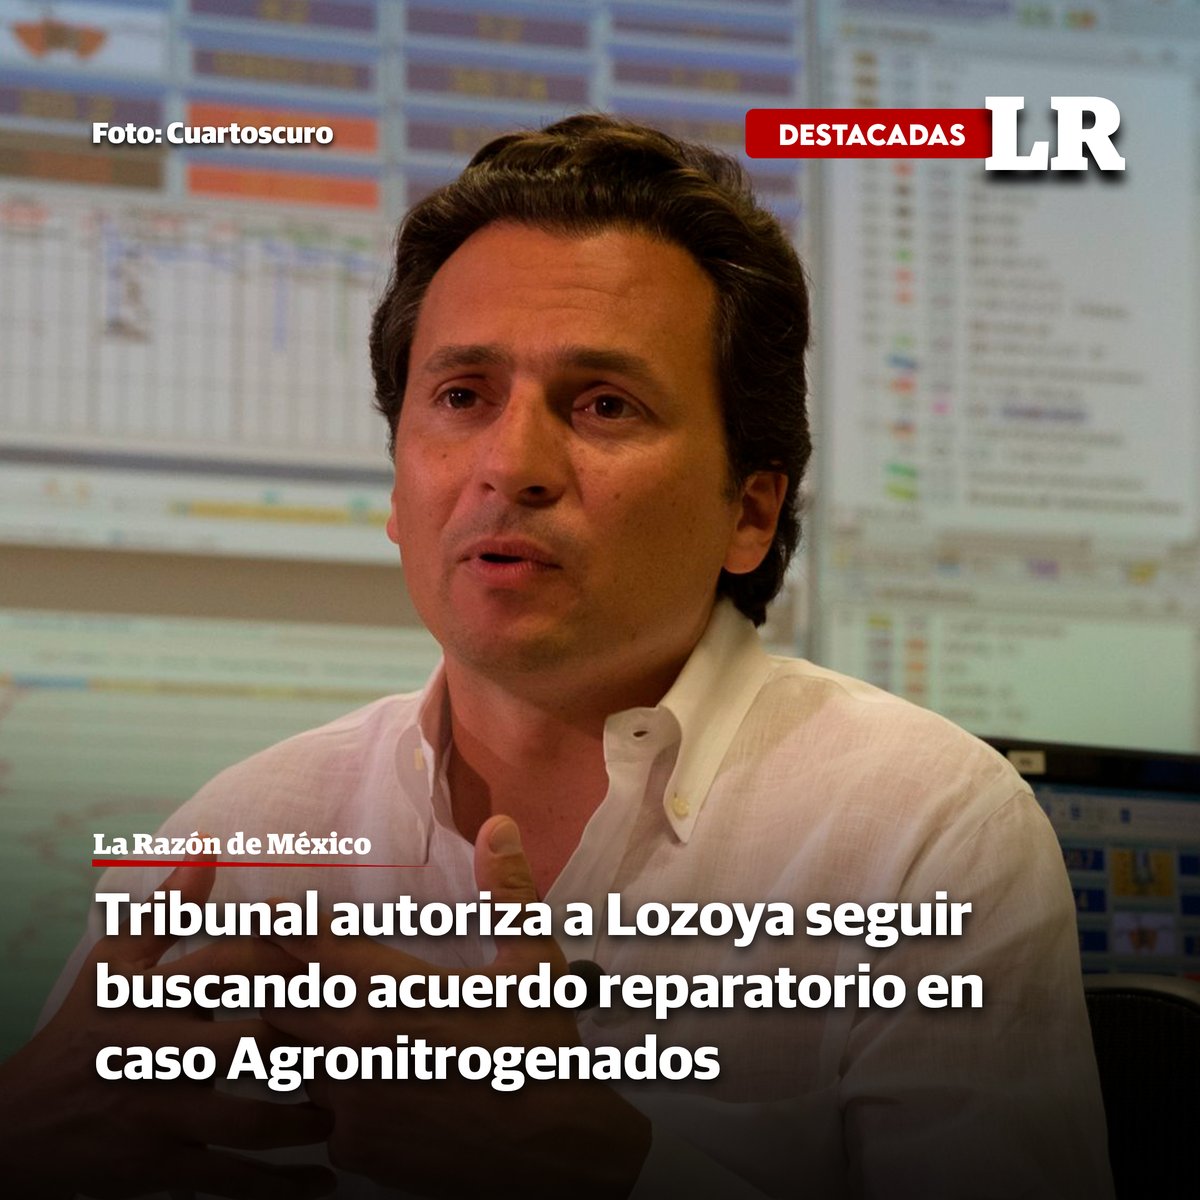 Fallo judicial permite a exdirector de @Pemex, #EmilioLozoya, buscar acuerdo reparatorio en caso Agronitrogenados pese a restricciones tinyurl.com/2y8snpsn